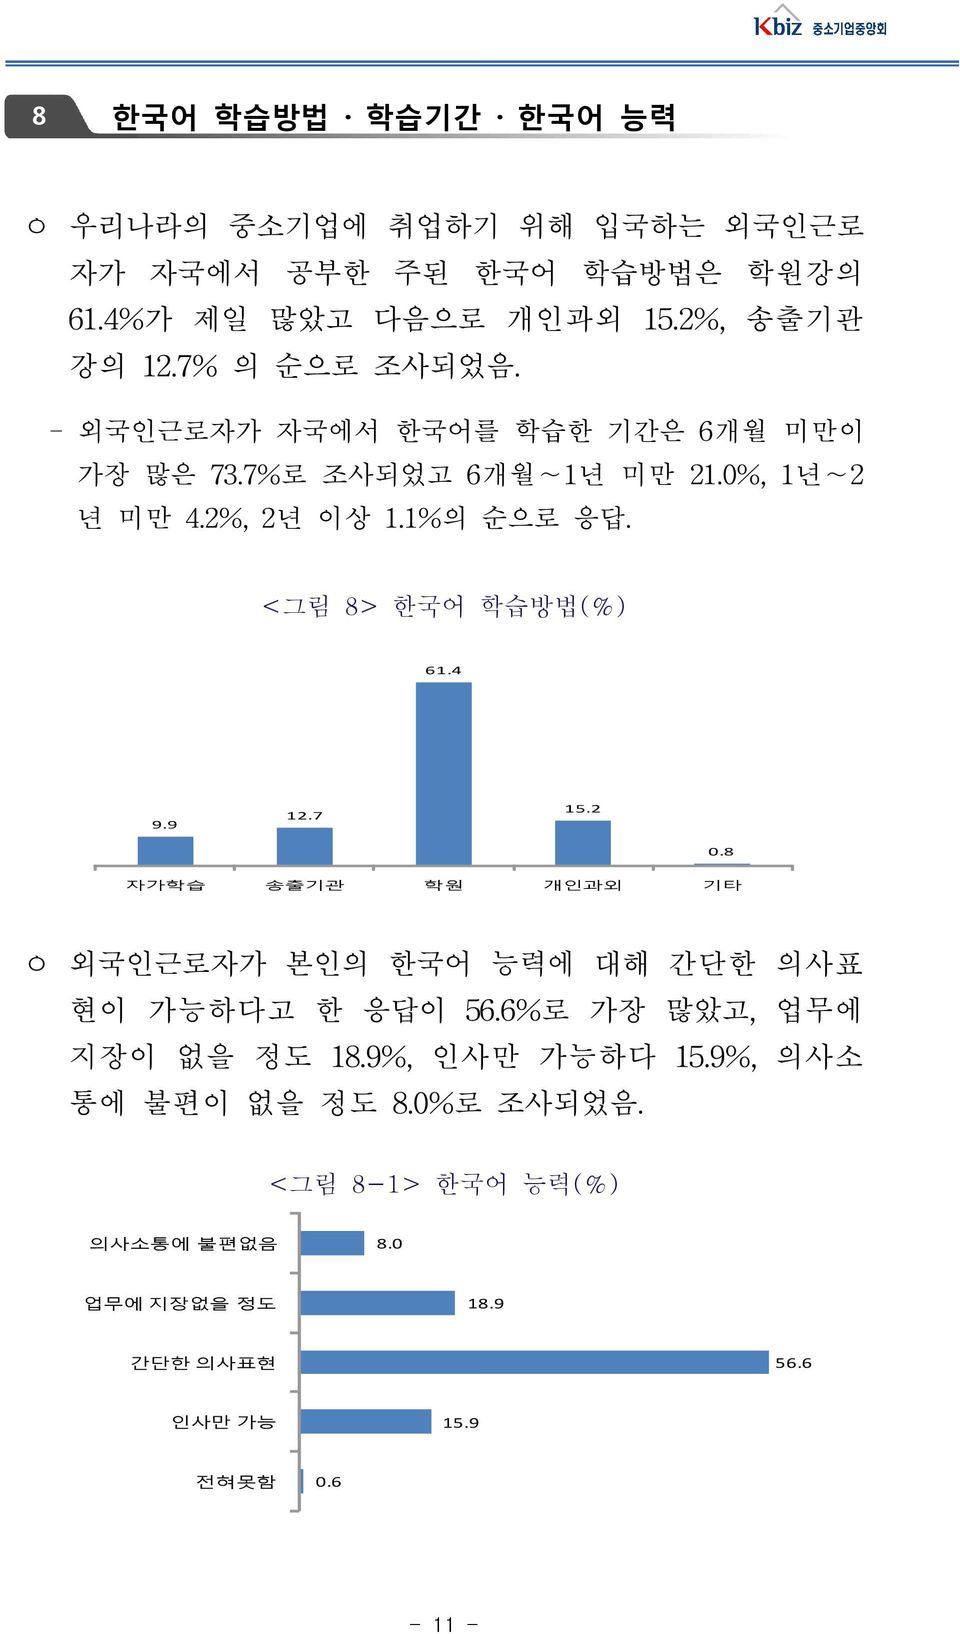 <그림 8> 한국어 학습방법(%) 61.4 9.9 12.7 15.2 0.8 자가학습 송출기관 학원 개인과외 기타 ㅇ 외국인근로자가 본인의 한국어 능력에 대해 간단한 의사표 현이 가능하다고 한 응답이 56.